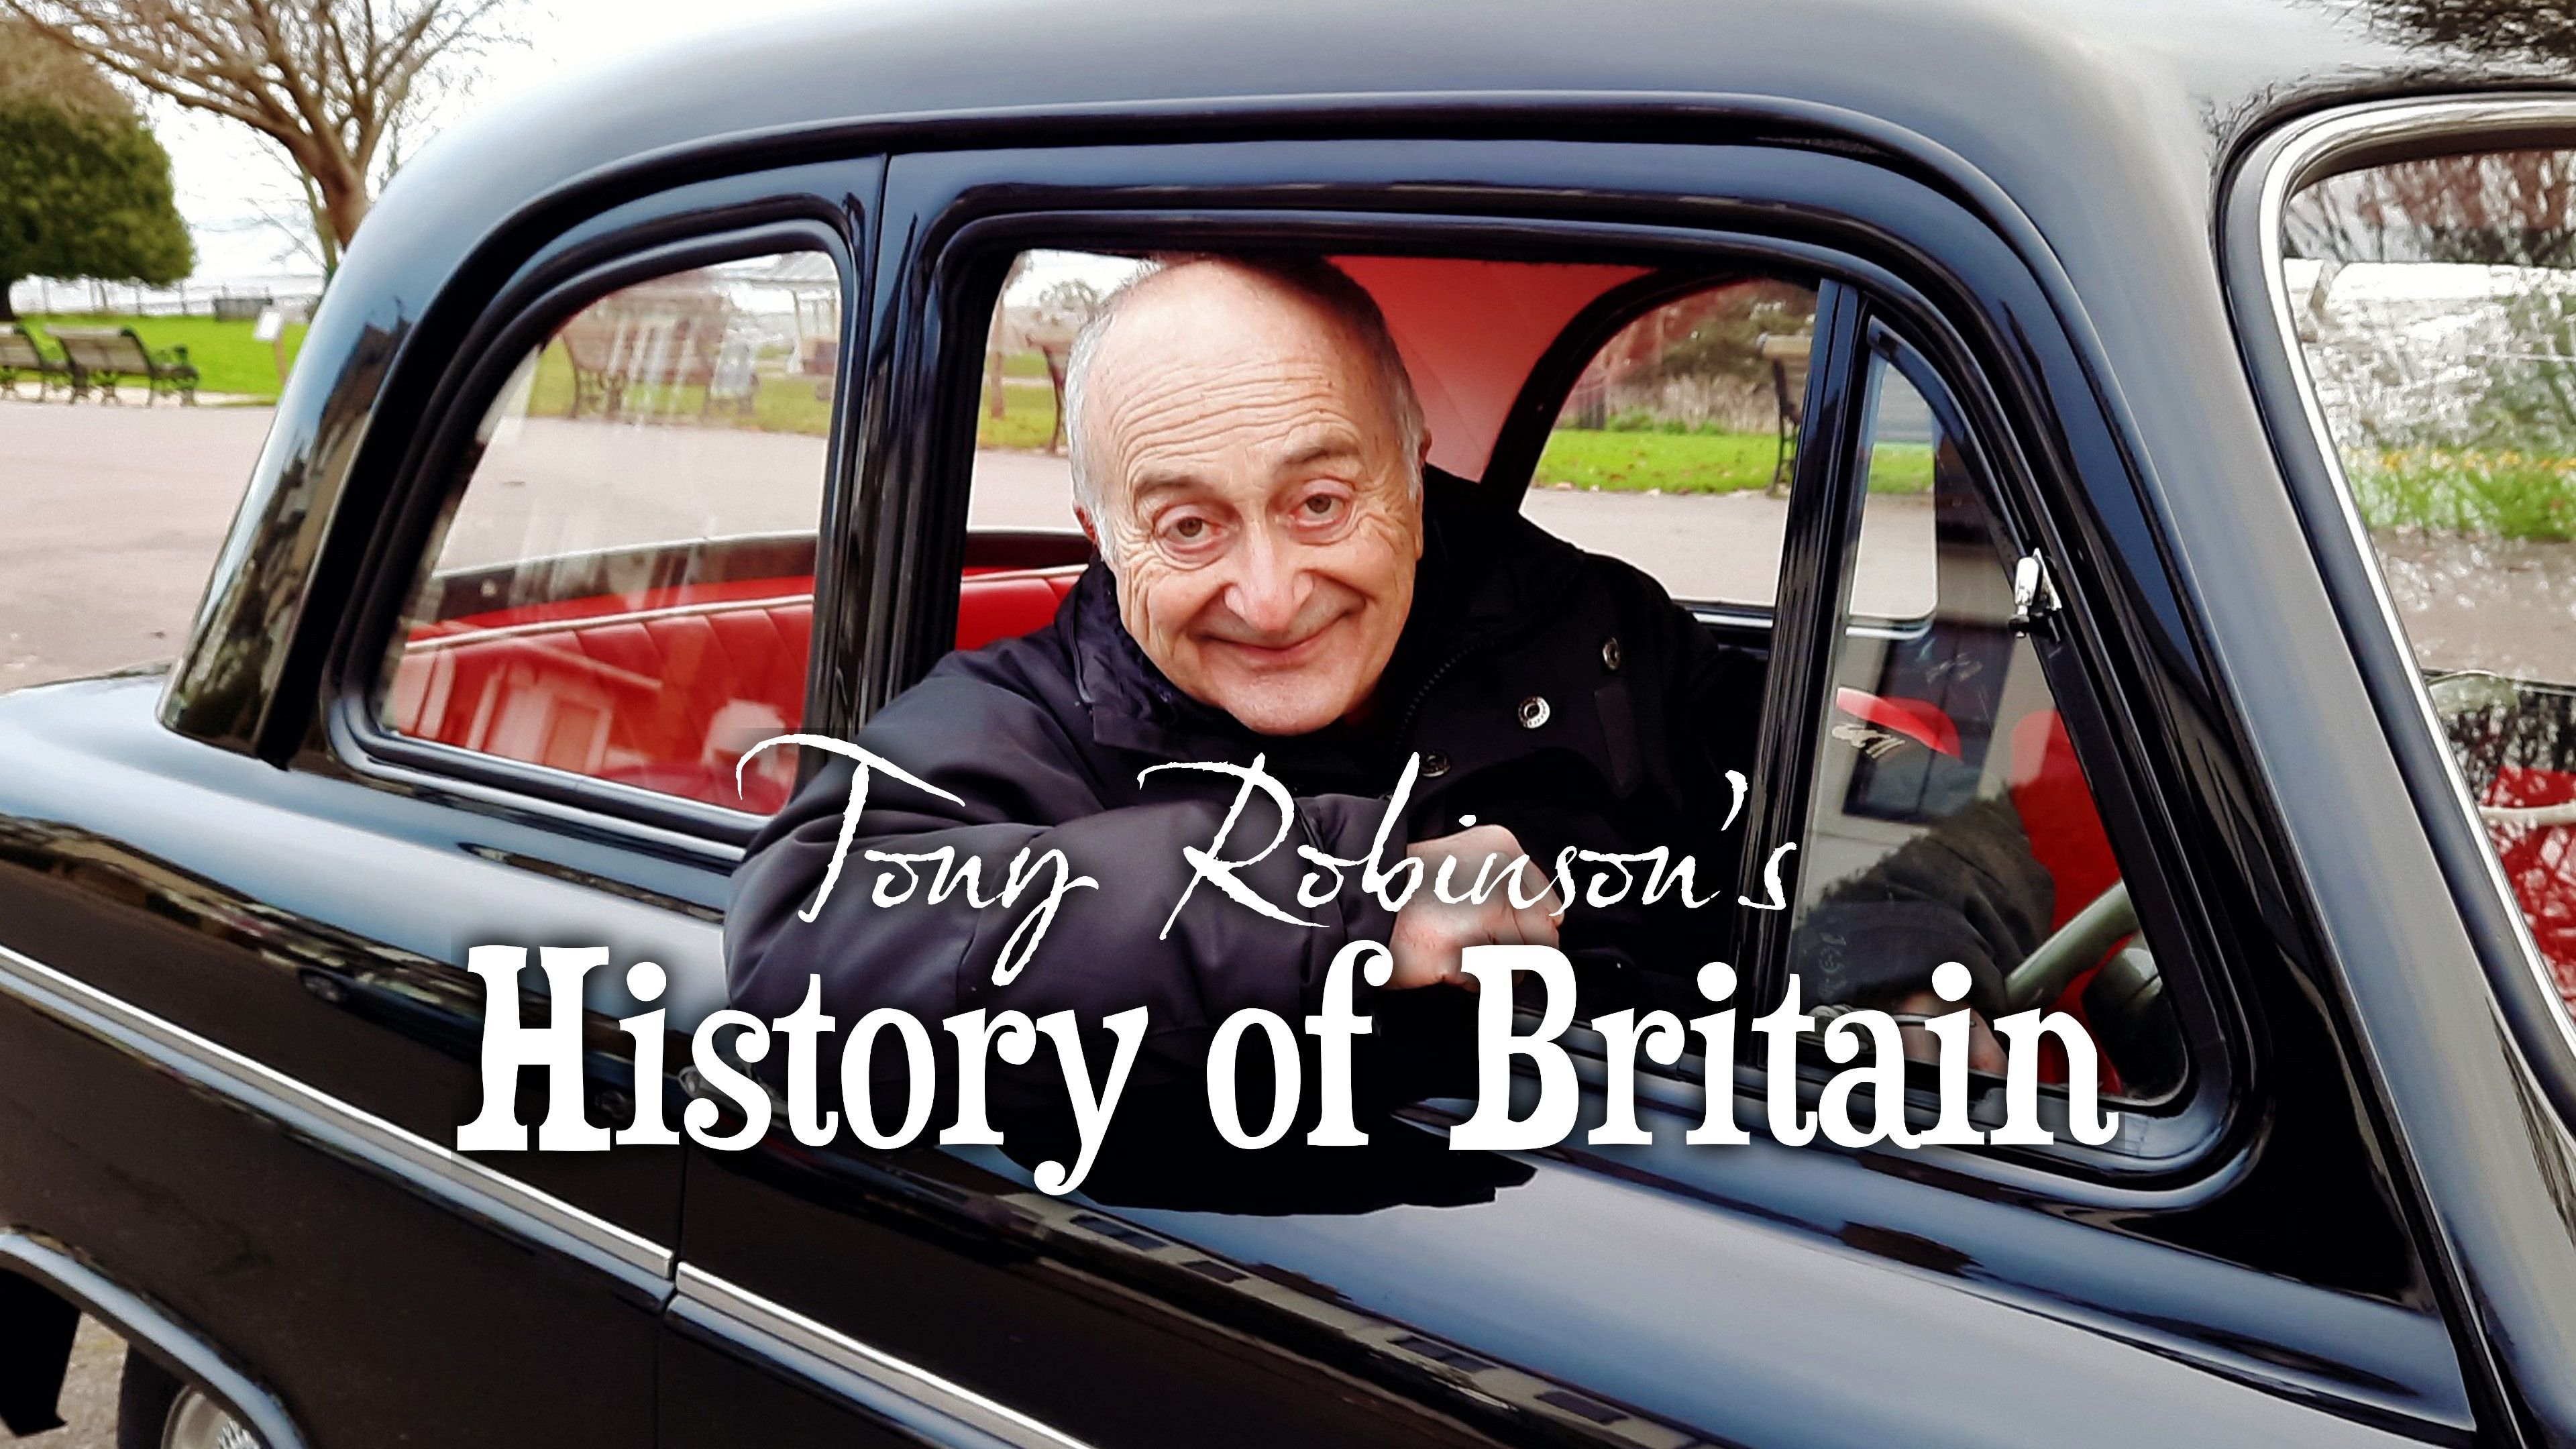 Tony Robinson’s History of Britain (Series 2)